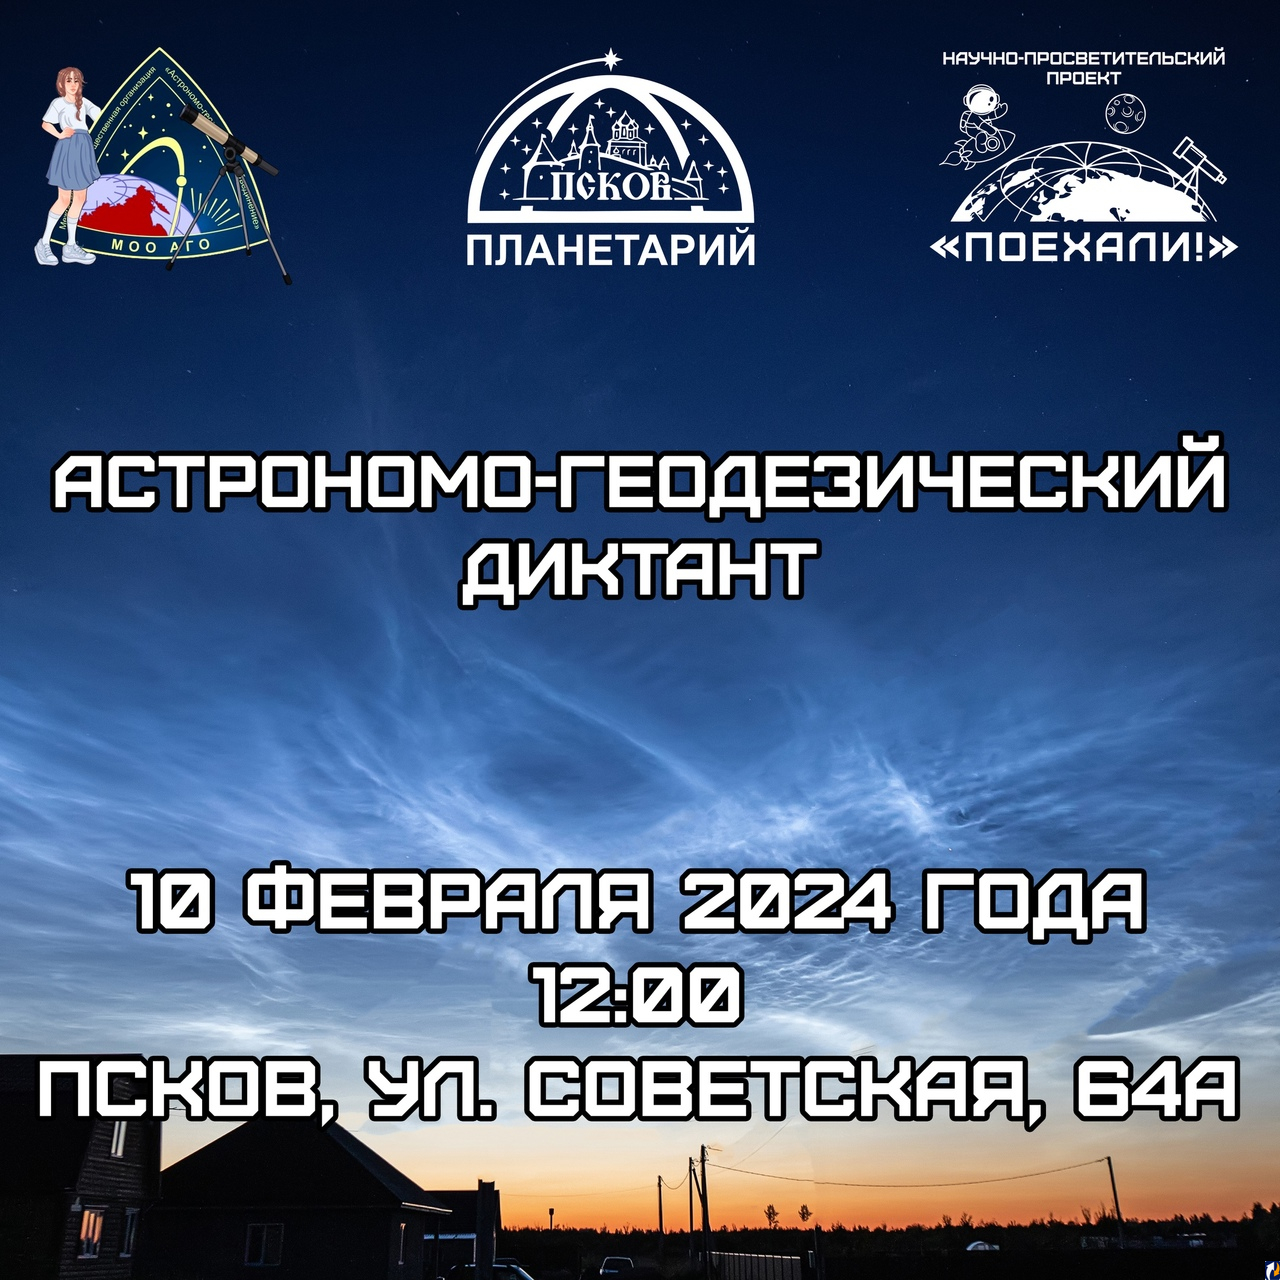 Псковичей приглашают принять участие в астрономо-геодезическом диктанте